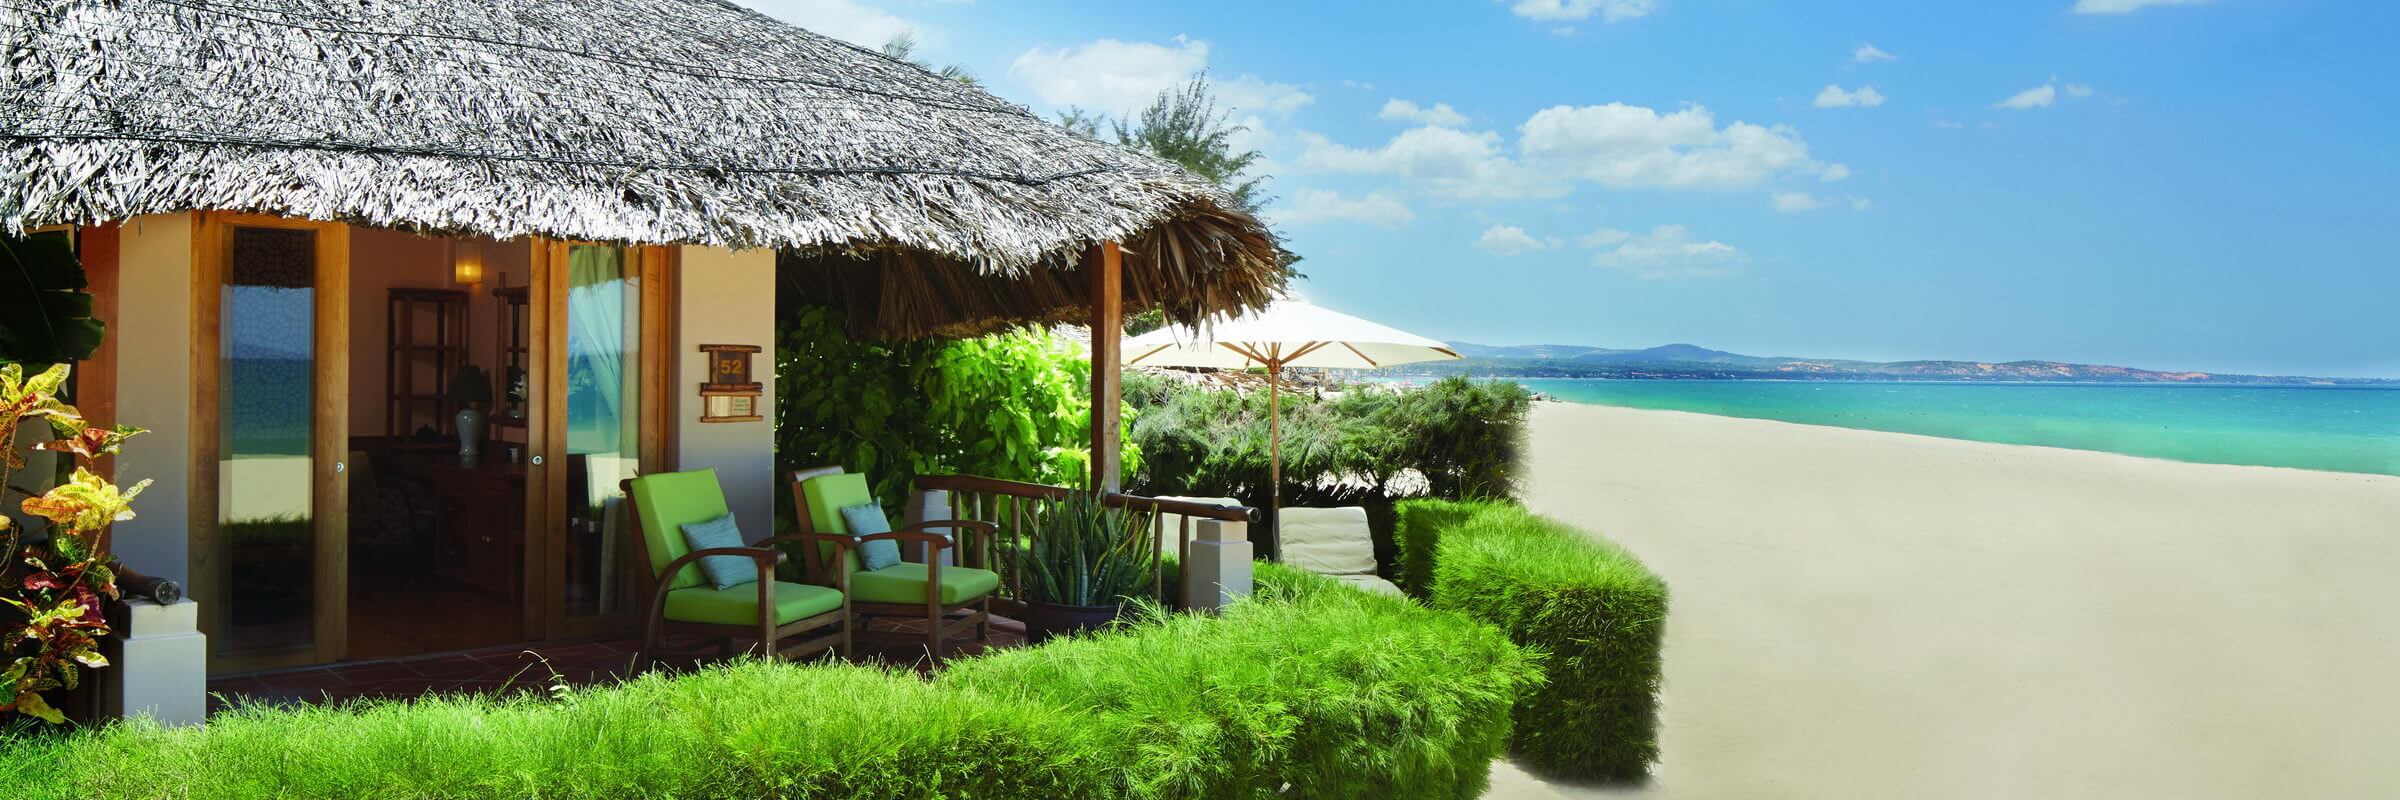 Die Deluxe Beachfront Bungalows verfügen über jeglichen Komfort und liegen direkt am Strand mit ungestörtem Blick auf das Meer.